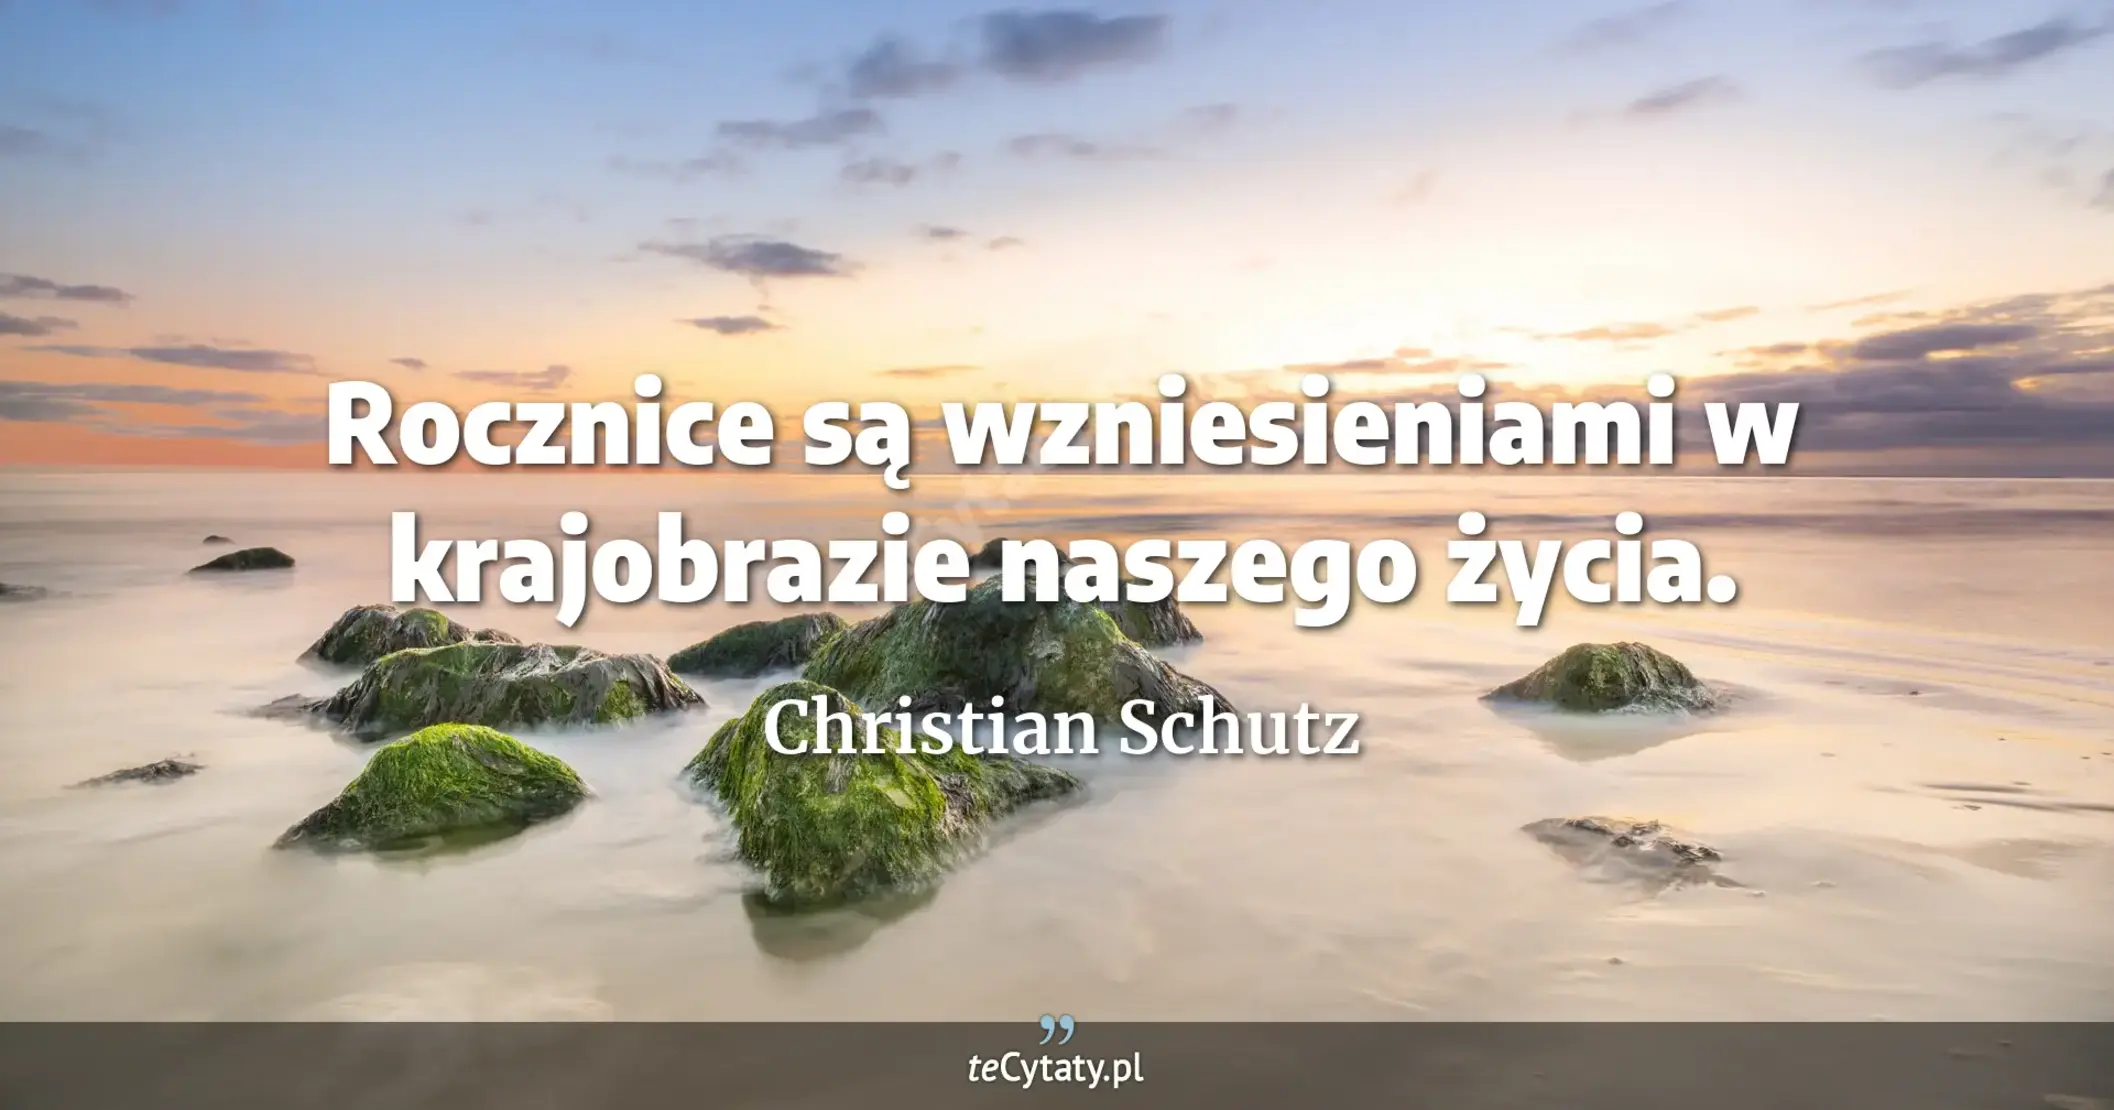 Rocznice są wzniesieniami w krajobrazie naszego życia. - Christian Schutz